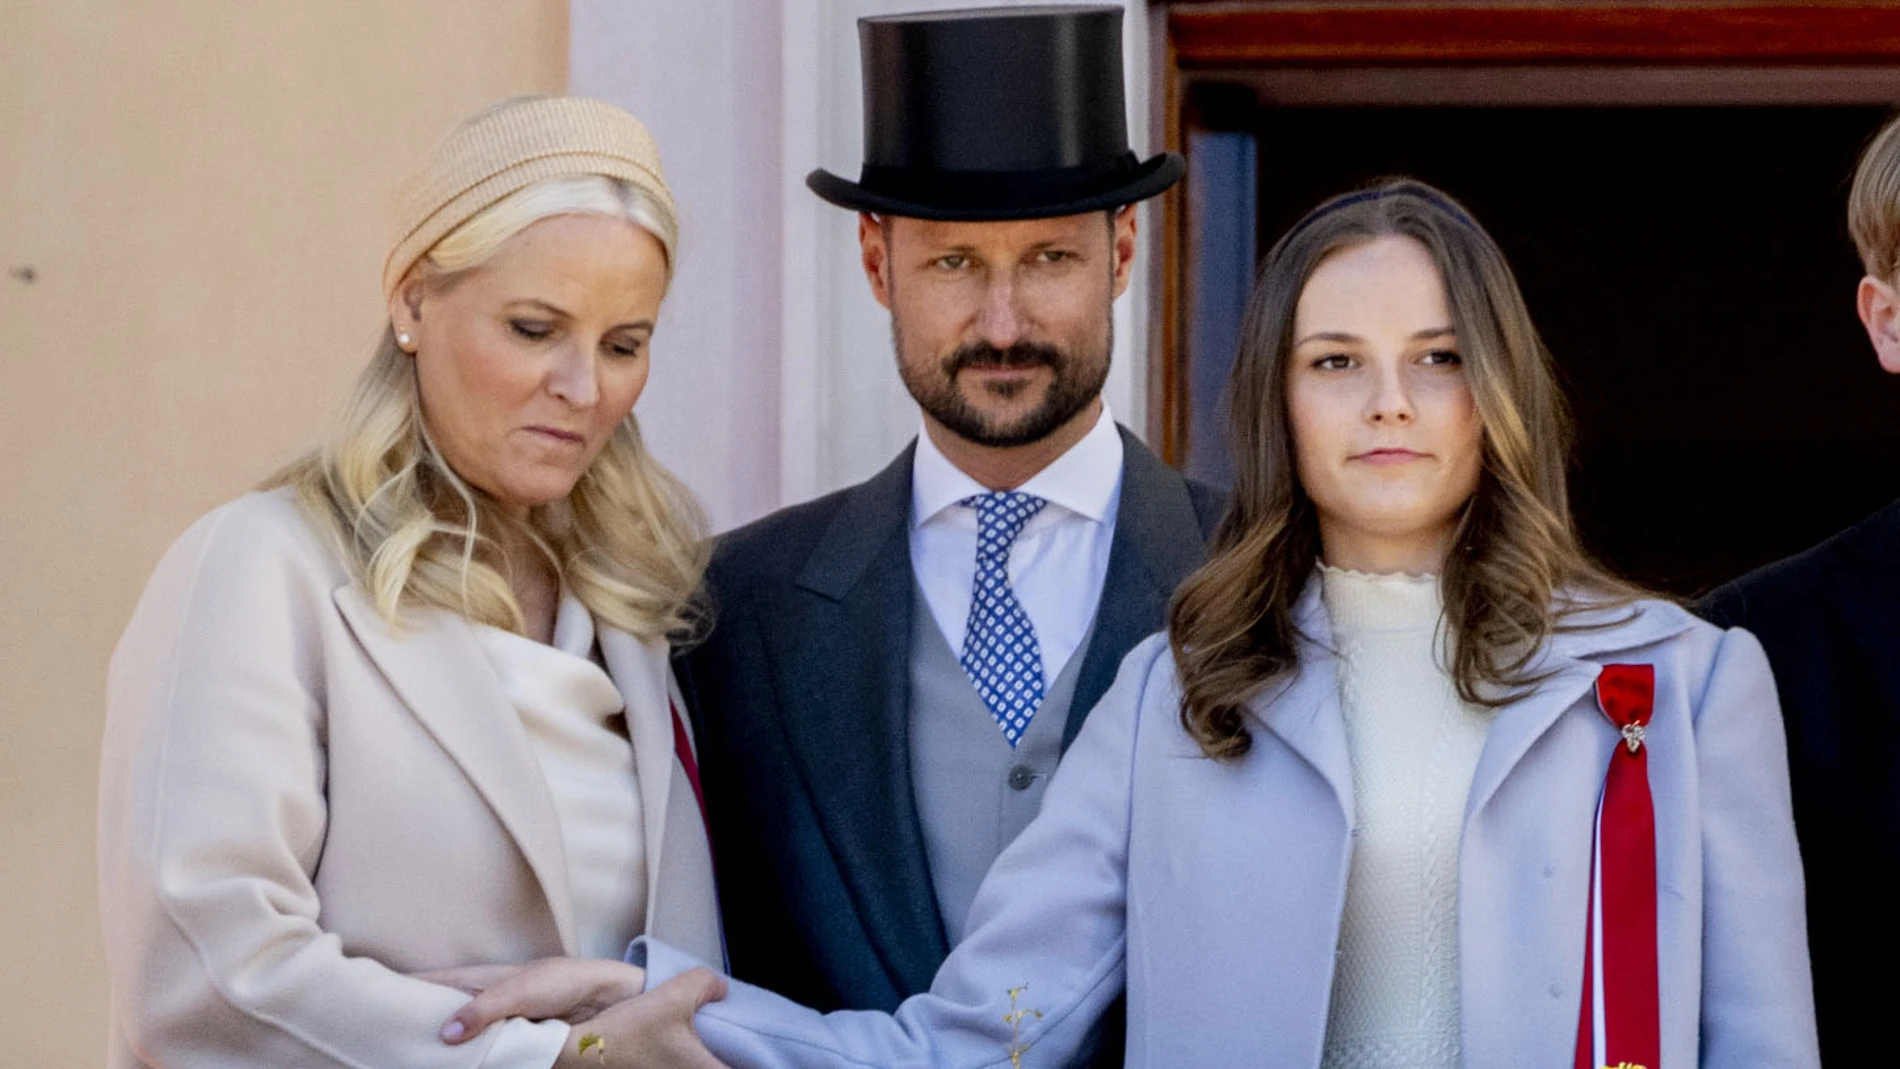 Ingrid de Noruega con sus padres, el príncipe Haakon y la princesa Mette-Marit 